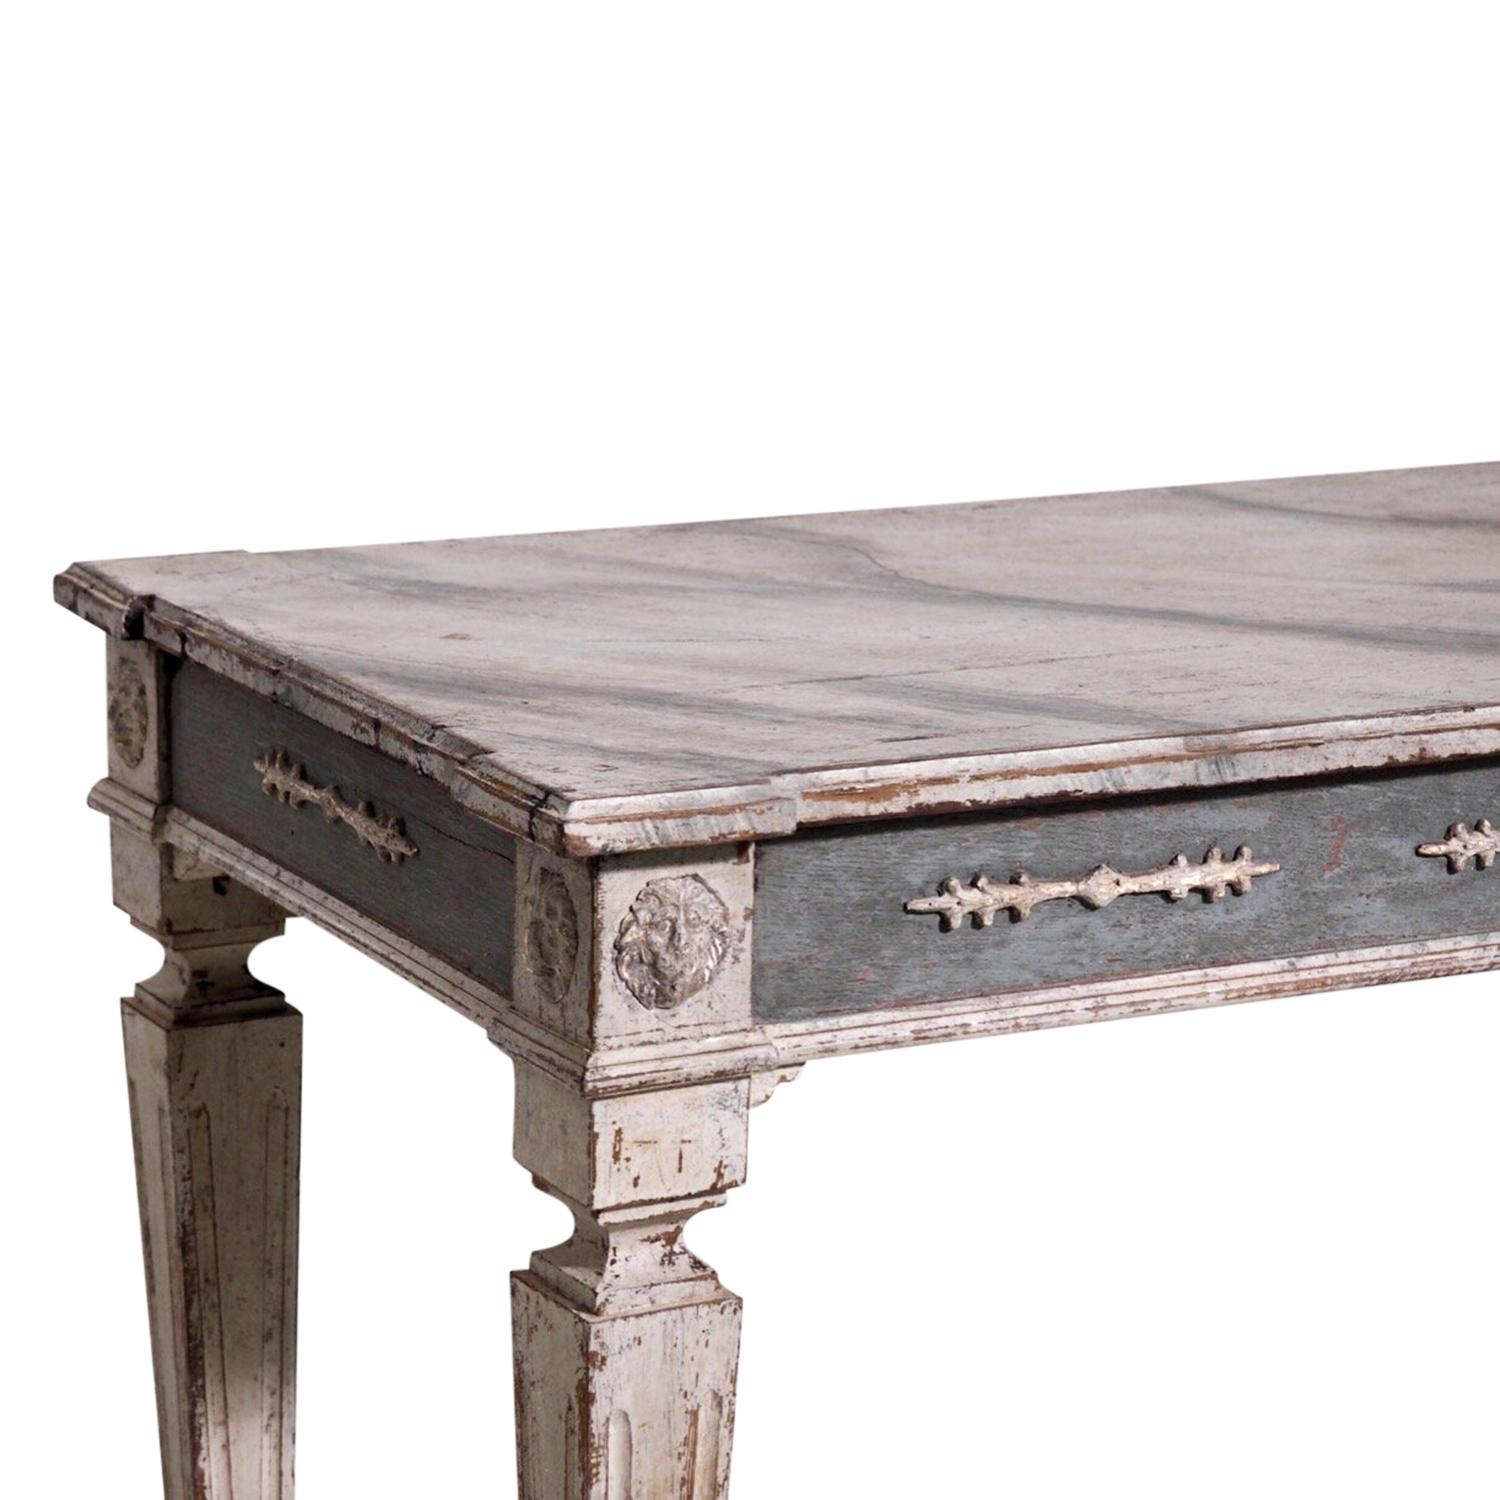 Ancienne table console suédoise gustavienne gris foncé avec un plateau en faux marbre peint, en bois de pin travaillé à la main, en bon état. La table d'appoint en bois scandinave repose sur quatre pieds droits et carrés, rehaussés par des